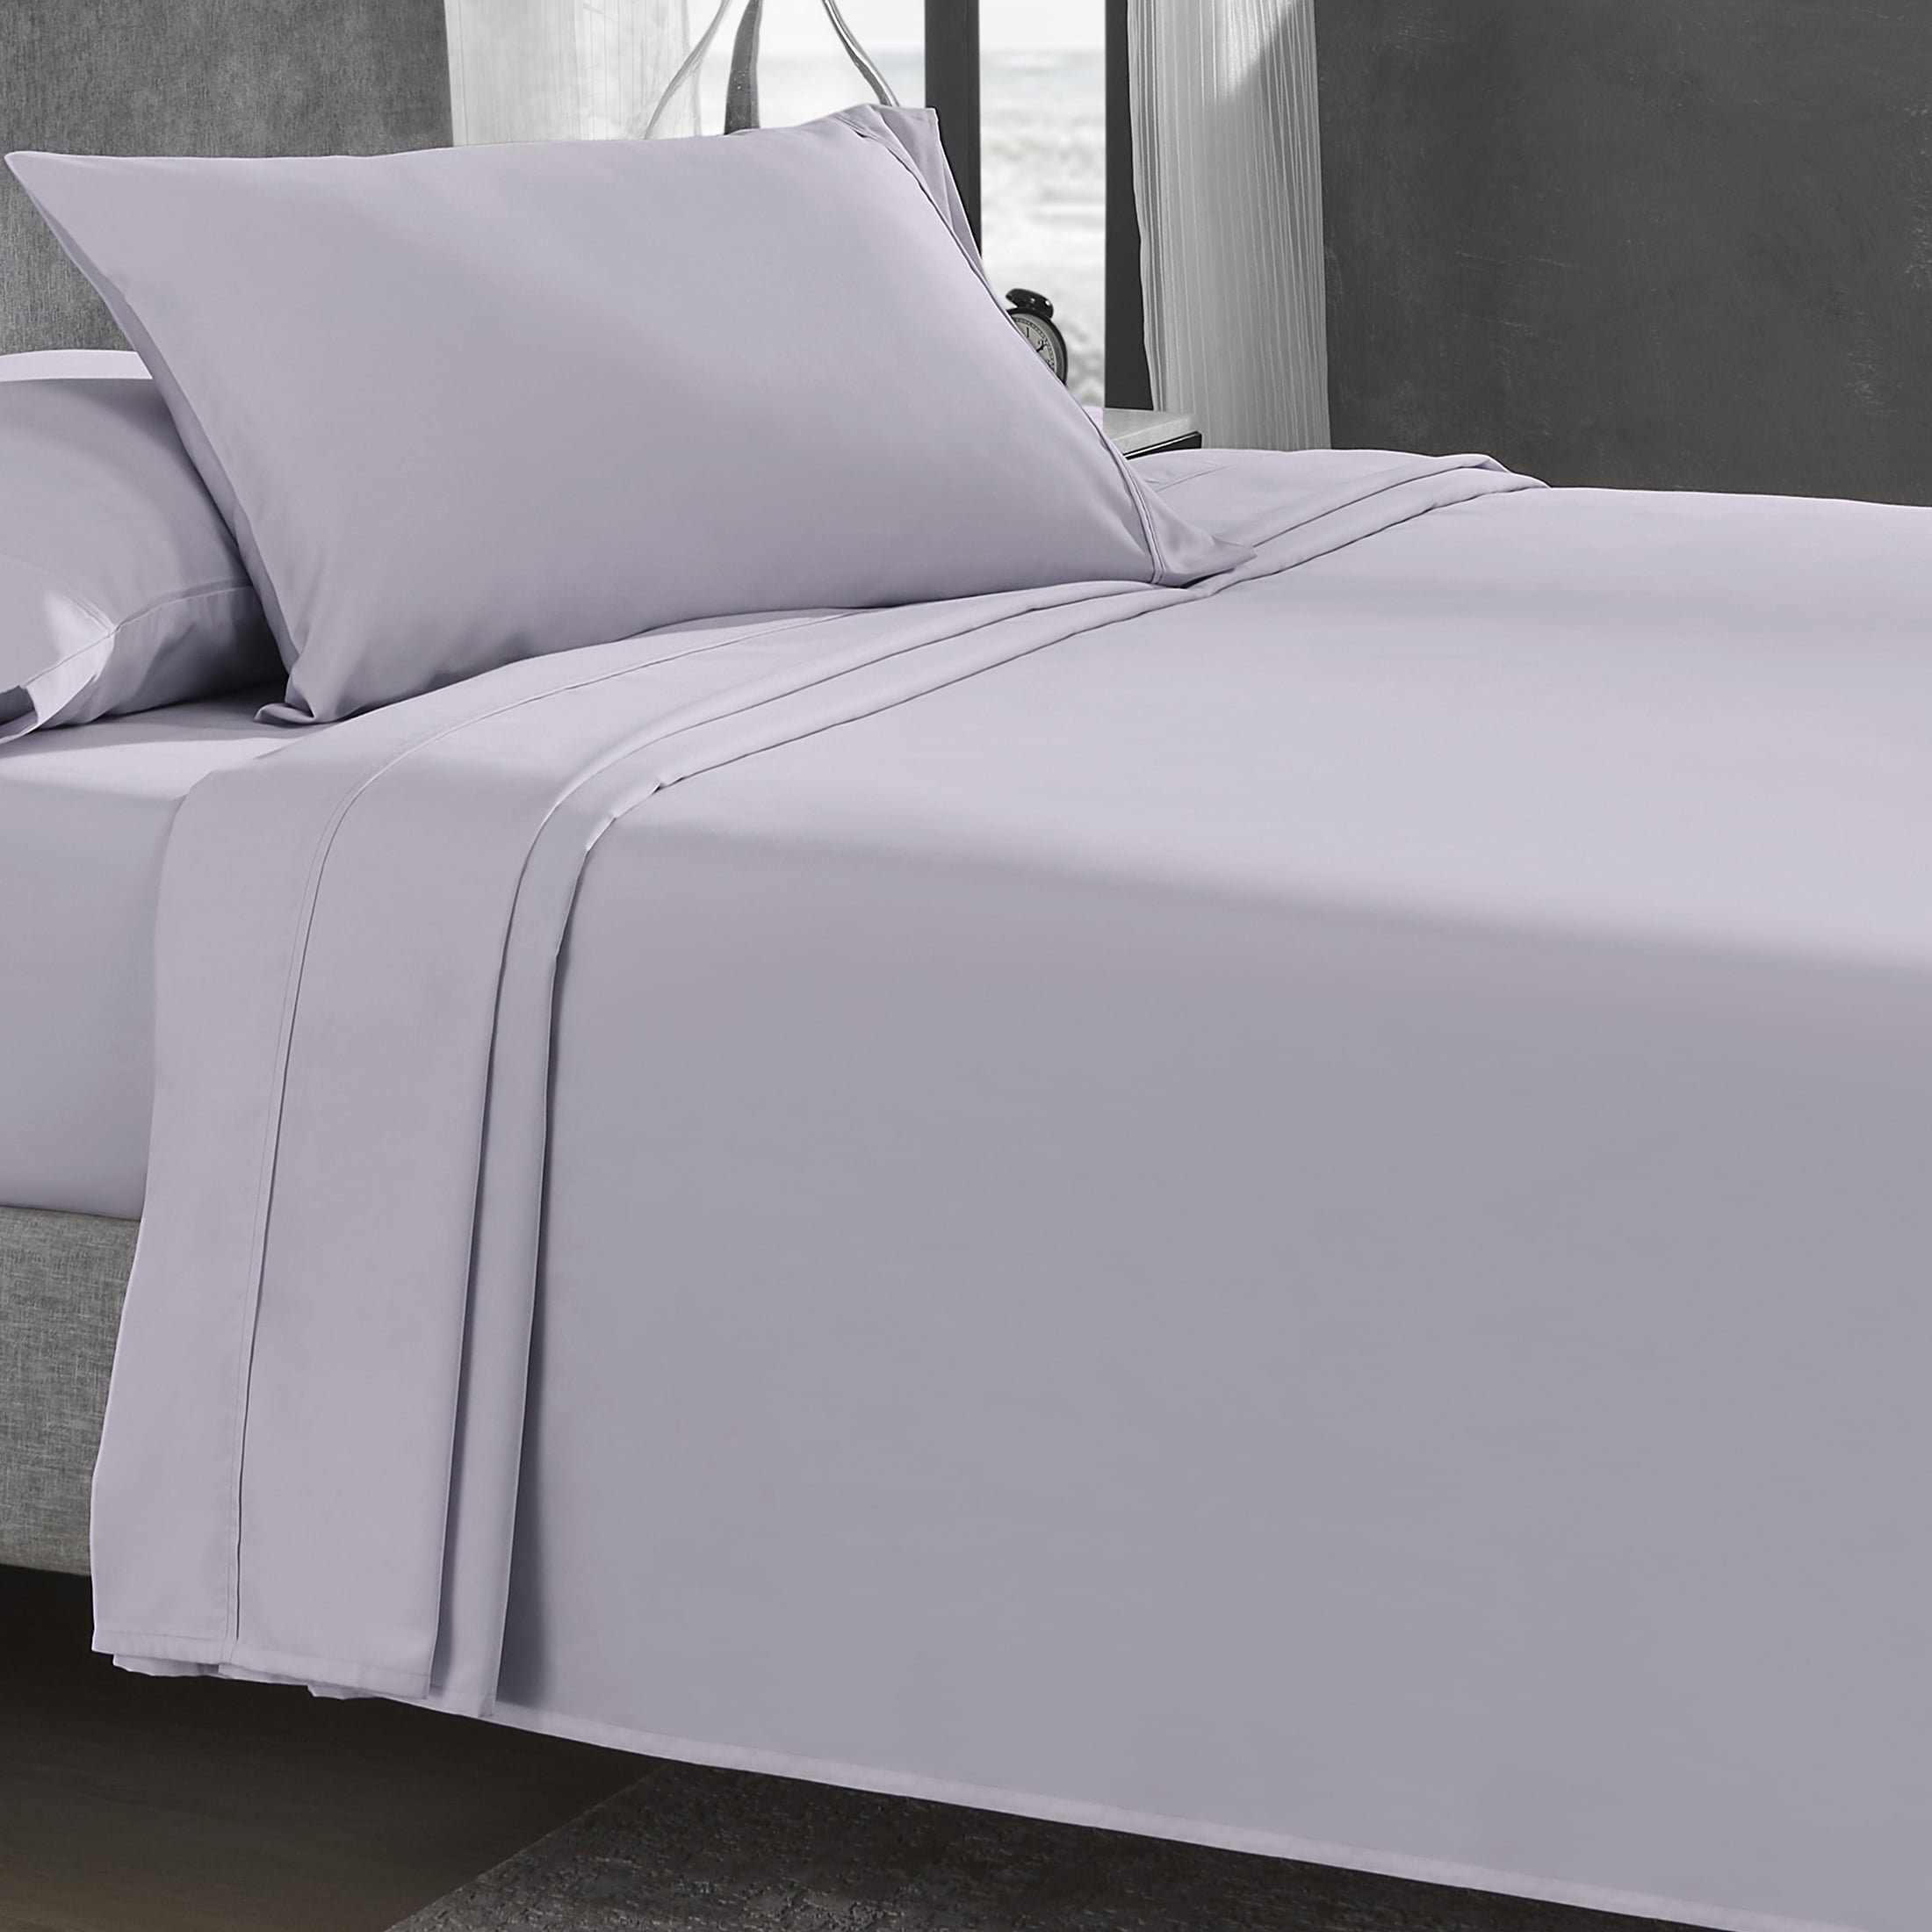 Navy Blue Details about   Premium 600 TC Egyptian Cotton Bed Sheet Set 4 Piece 